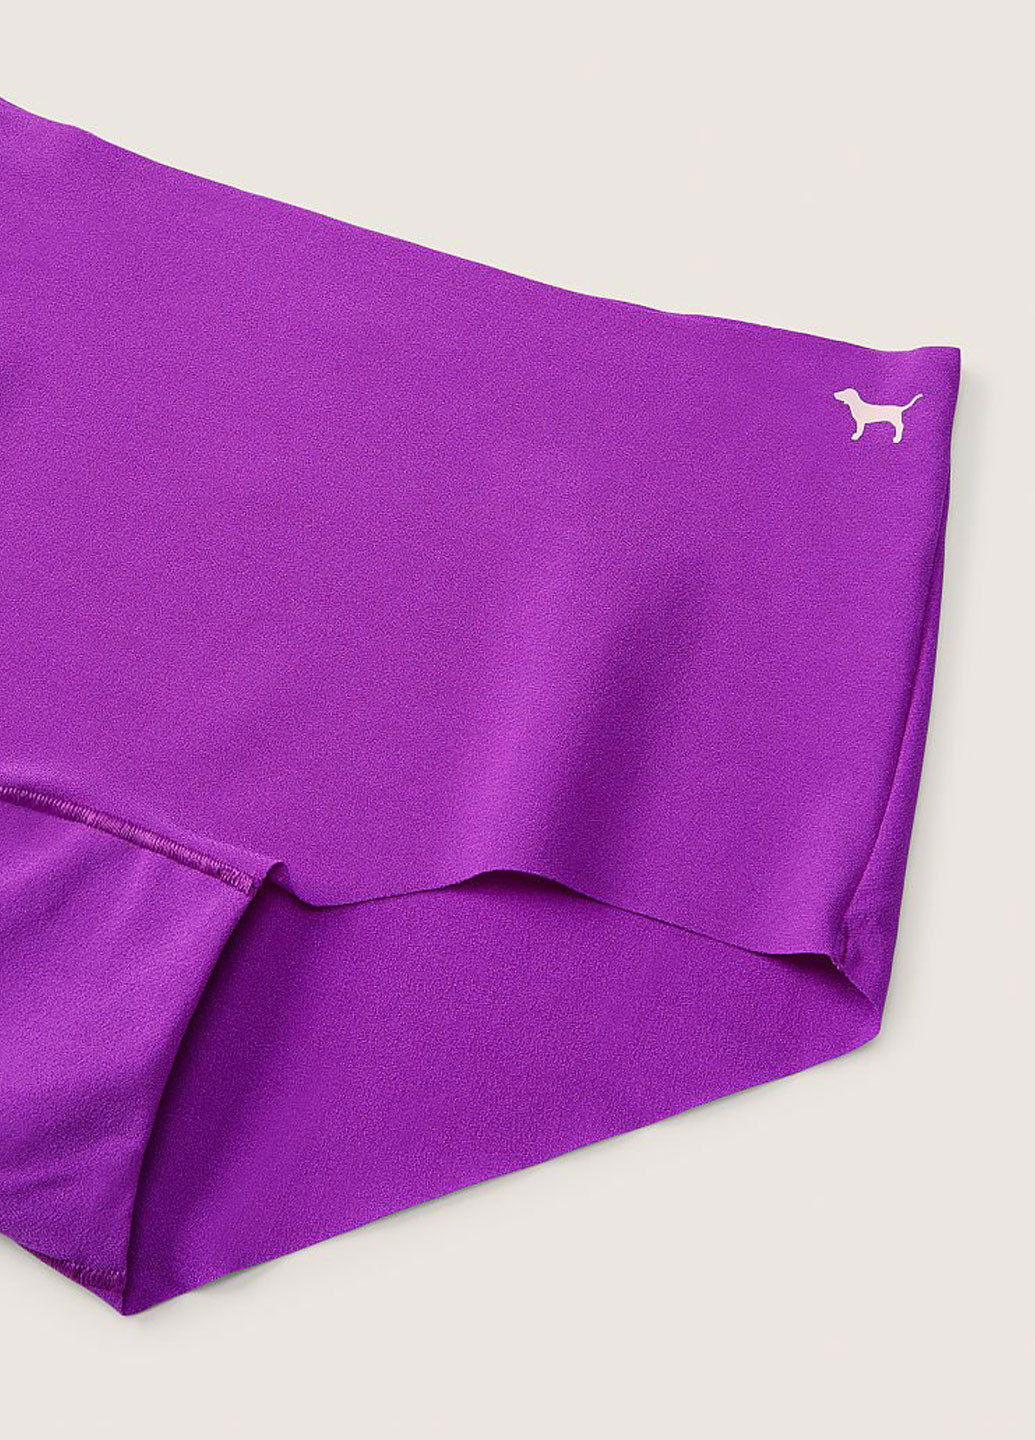 Трусики Victoria's Secret слип рисунки фиолетовые домашние полиамид, трикотаж